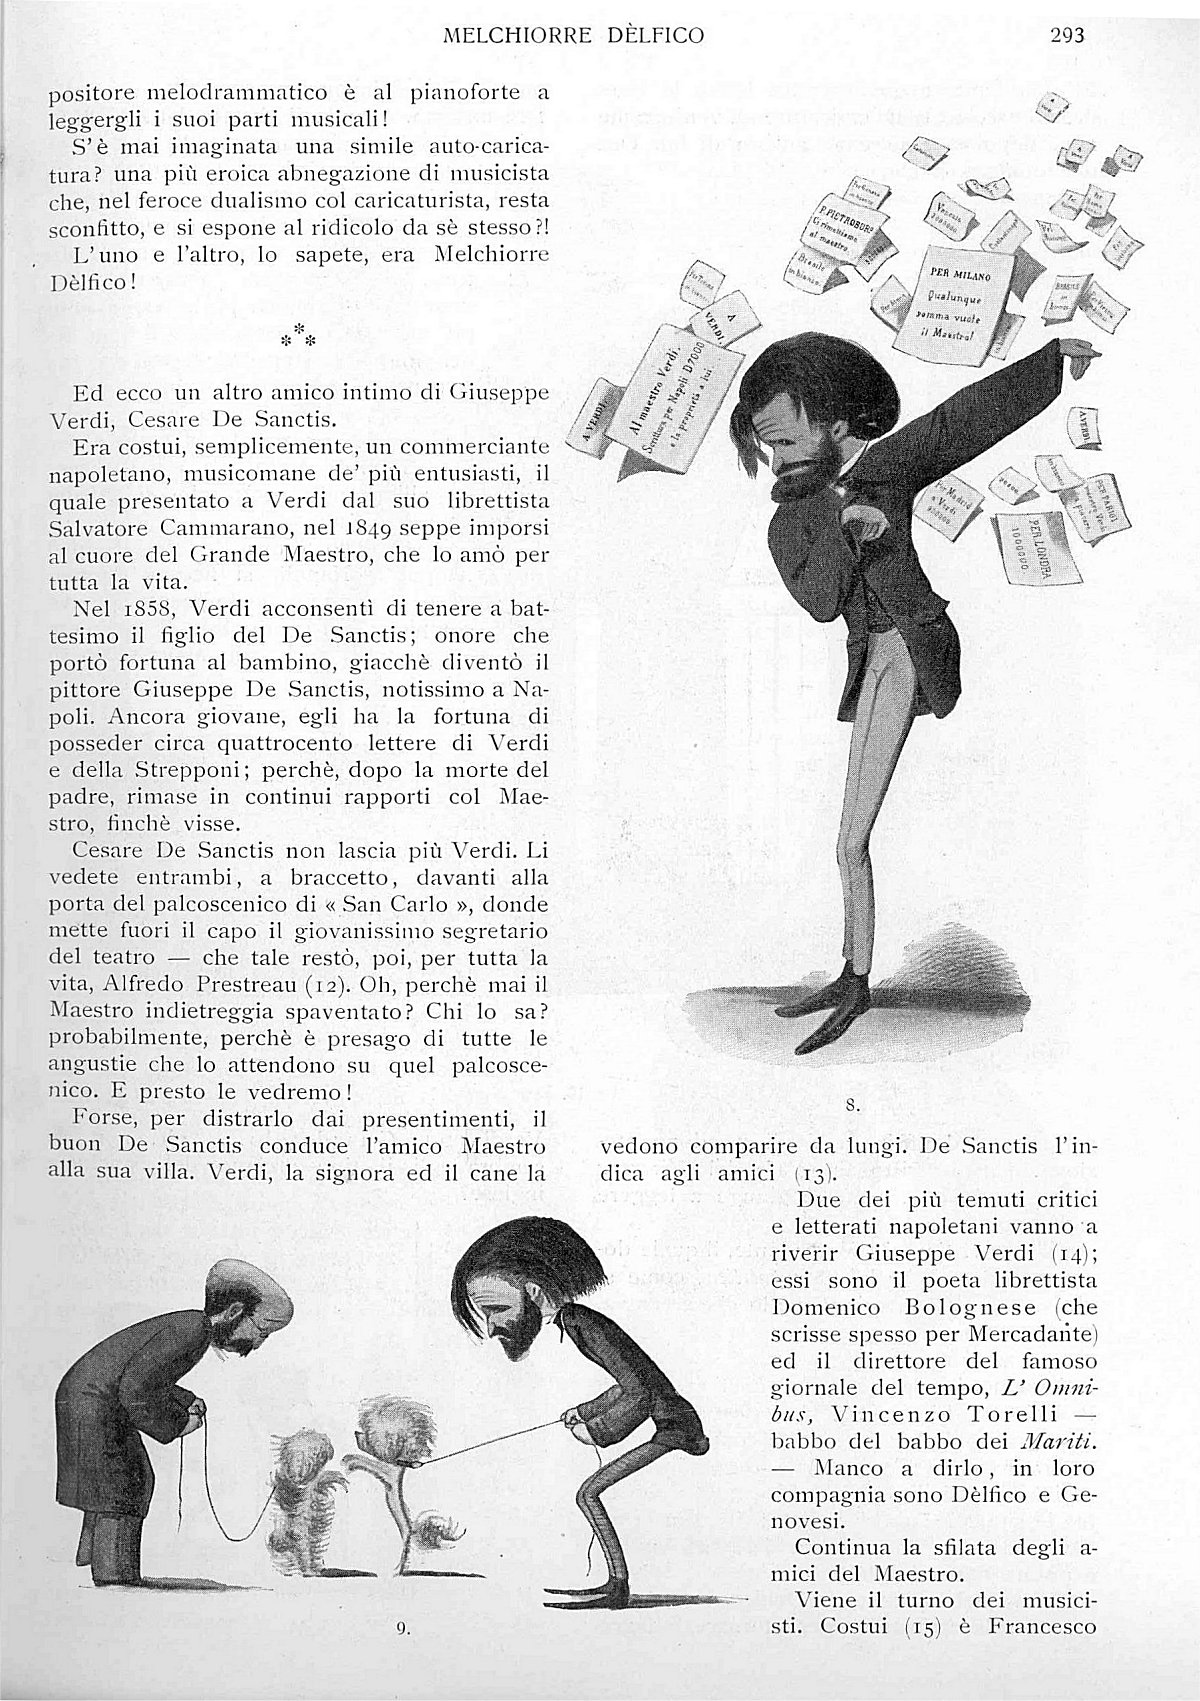 "Ars et Labor", Aprile 1906, anno 61°, n. 4, pag. 293